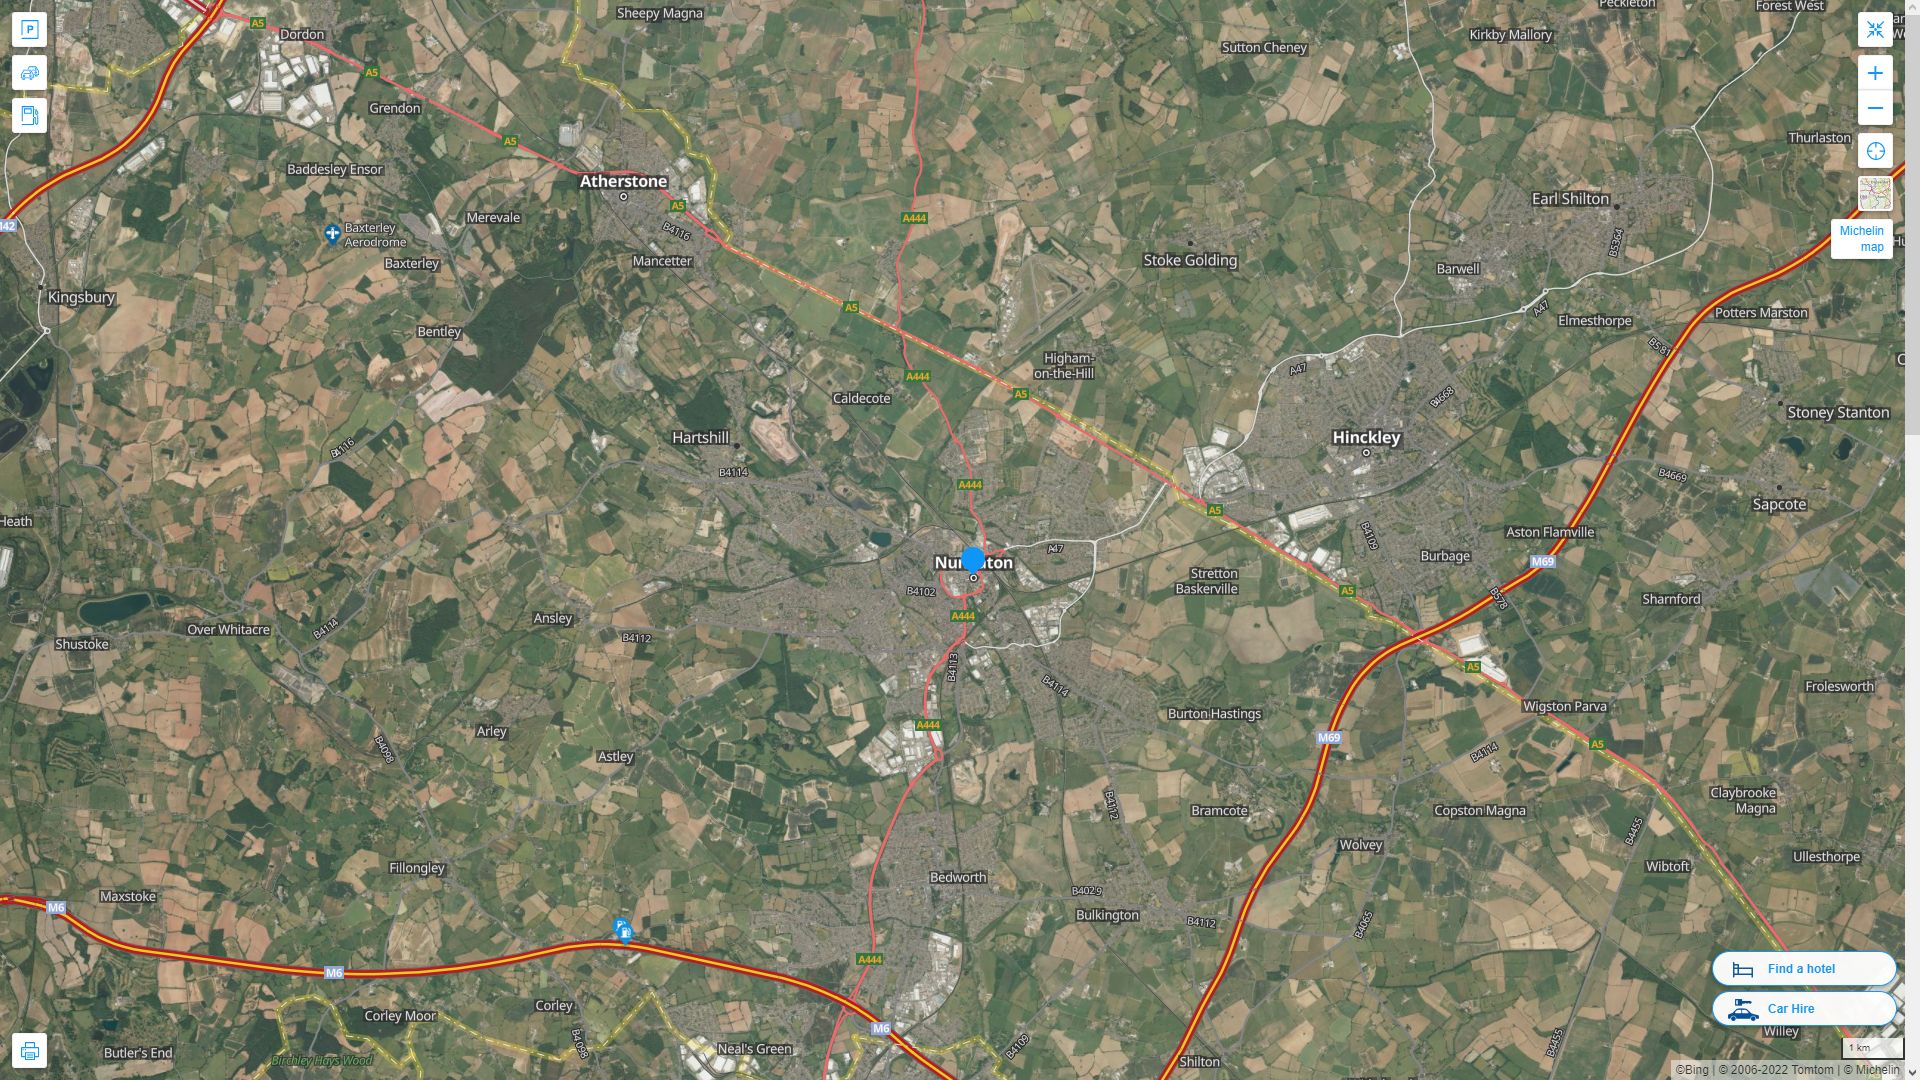 Nuneaton Royaume Uni Autoroute et carte routiere avec vue satellite